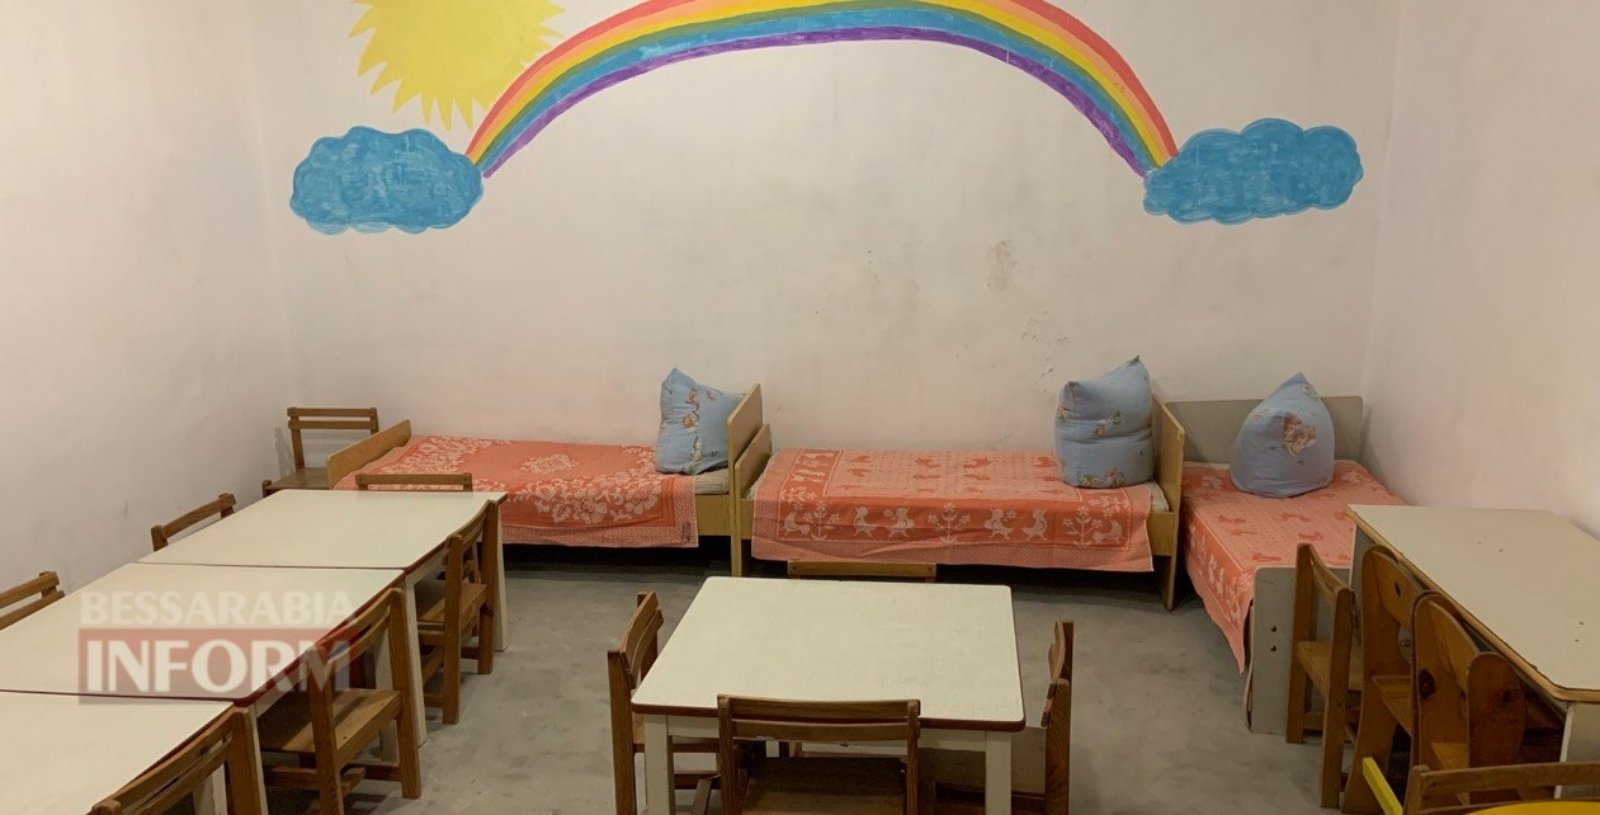 «Детский садик может уже работать на полную мощность»: в дошкольном заведении Аккермана расширили укрытие до 150 мест